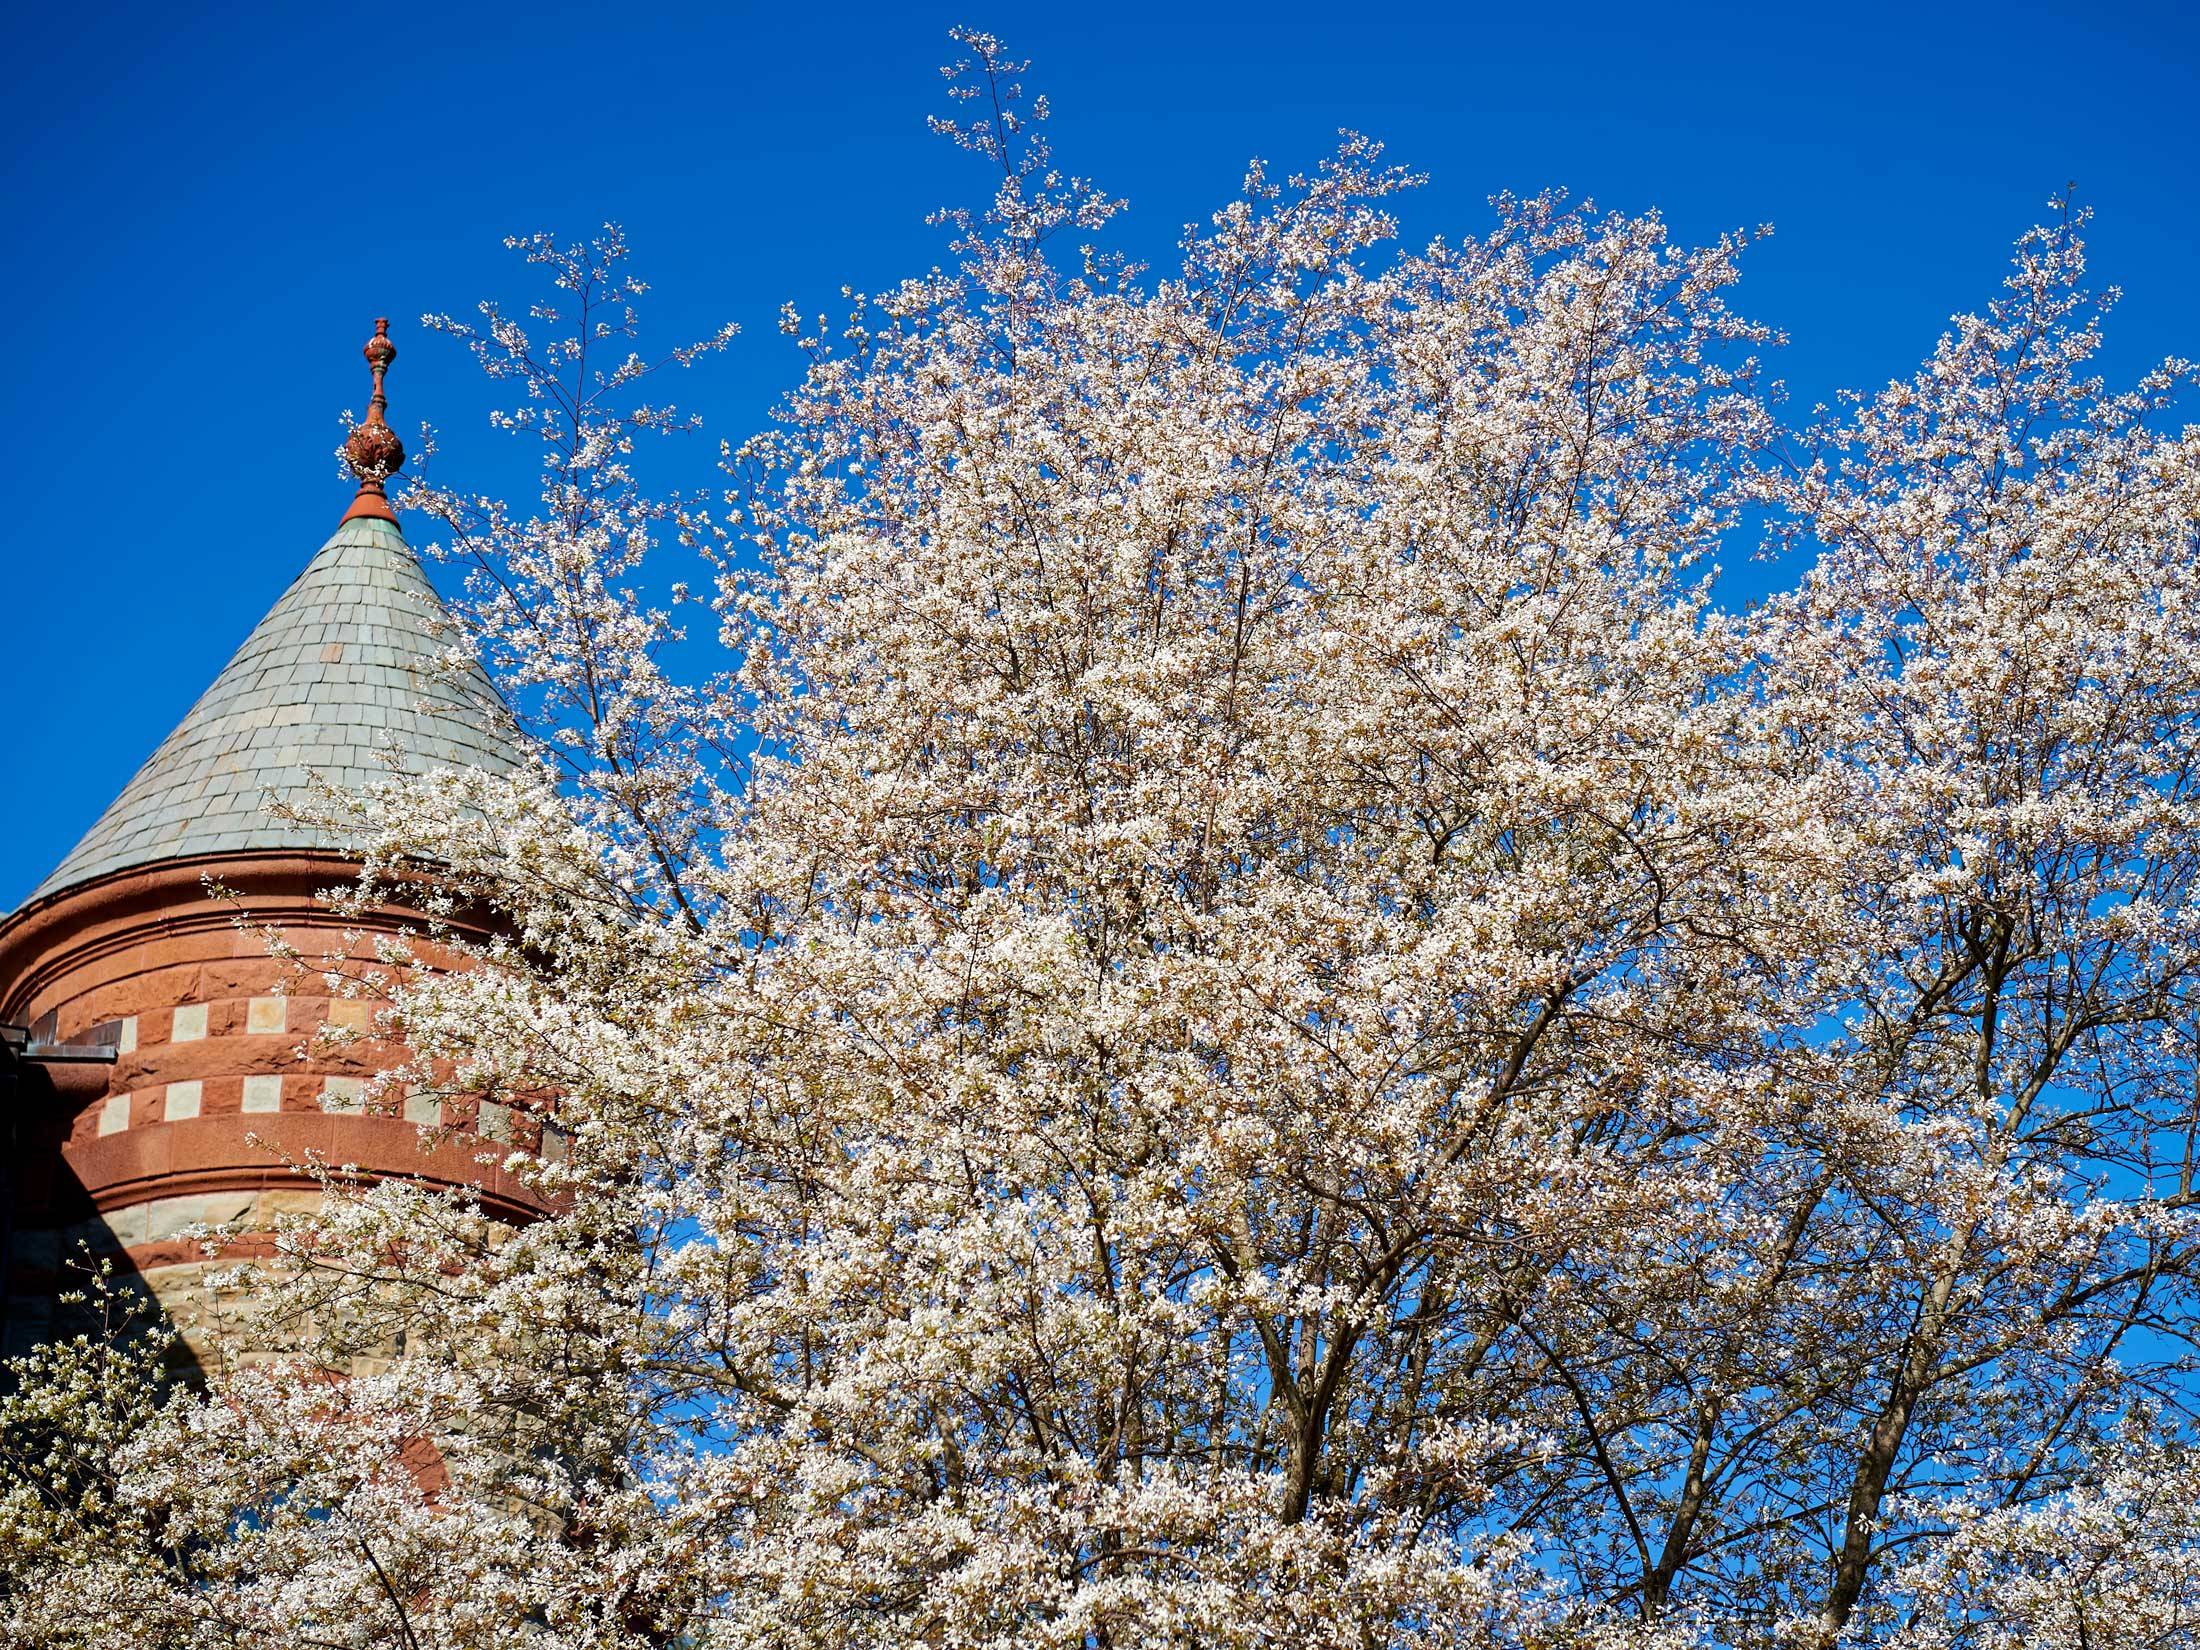 flowering tree on campus